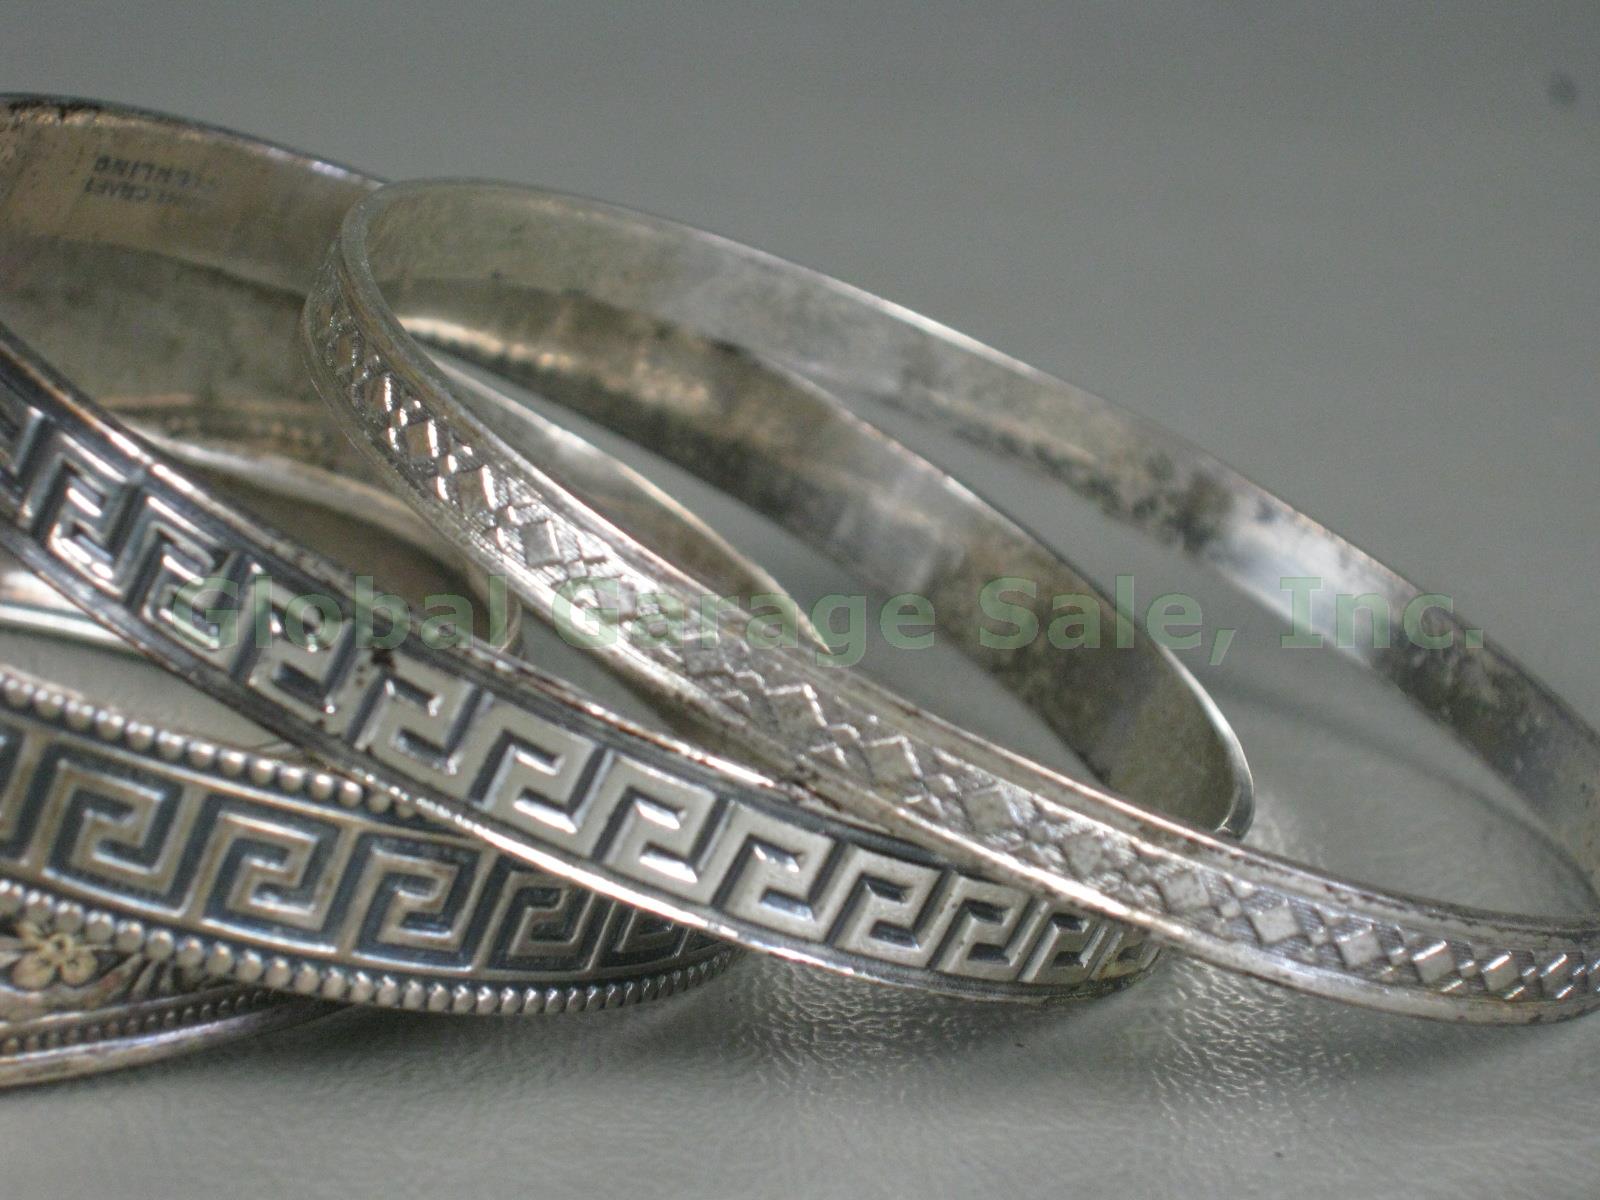 4 Vtg Danecraft Sterling Silver Bangle Bracelet Lot Greek Key Floral Rolled Edge 2